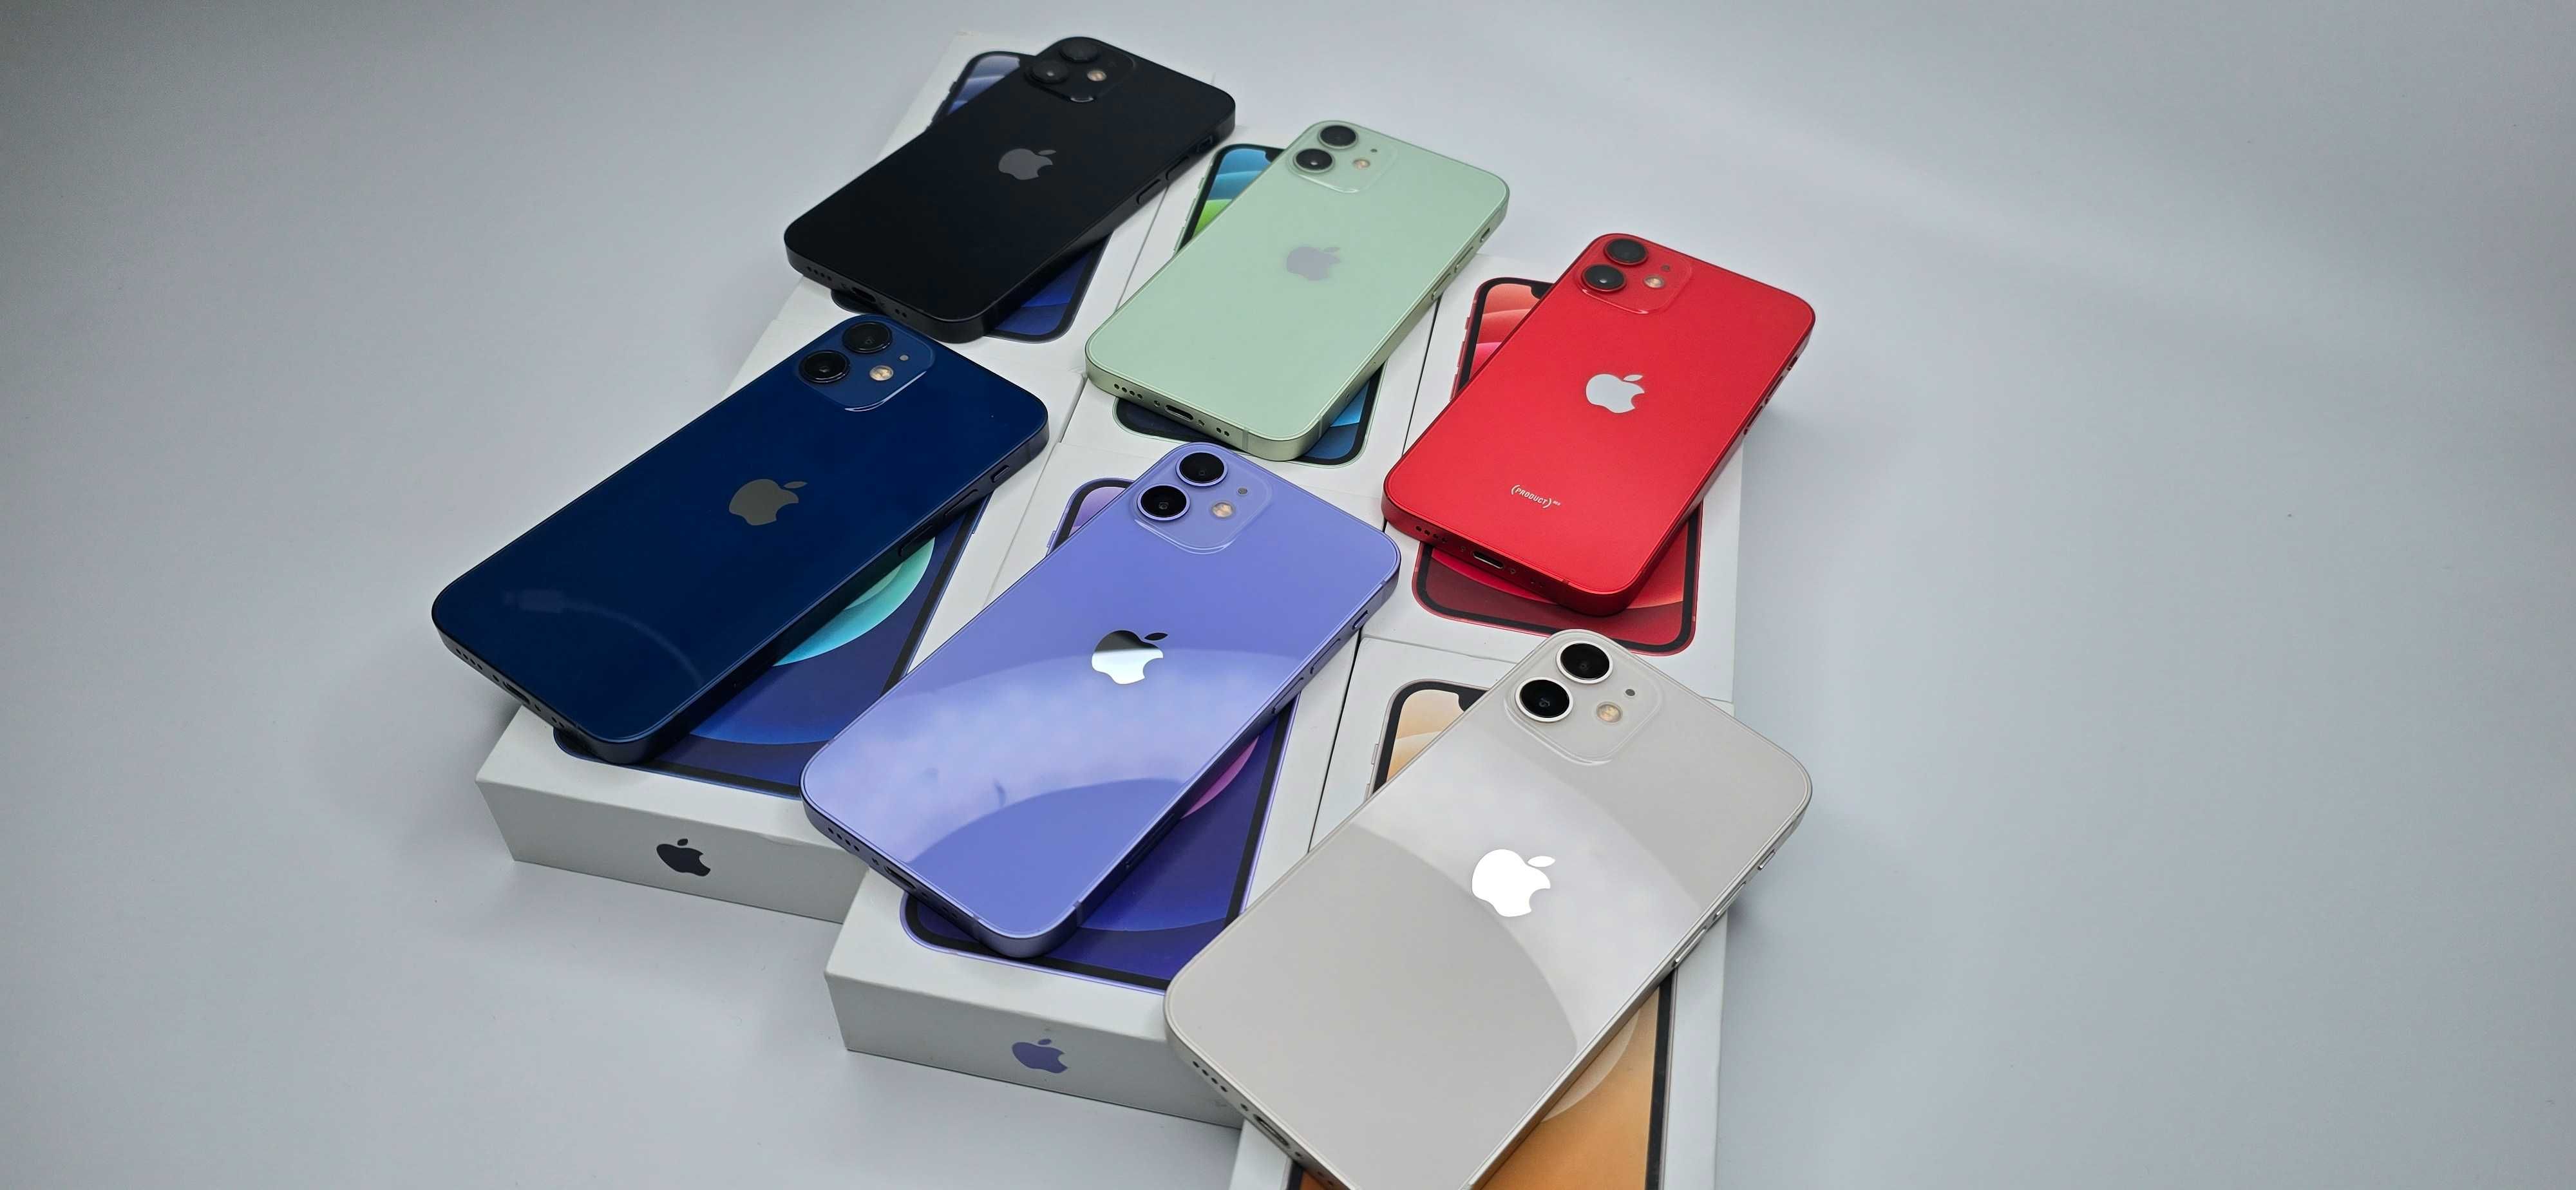 iPhone 12 mini 256gb komplet, gwarancja, sklep, 6 kolorów